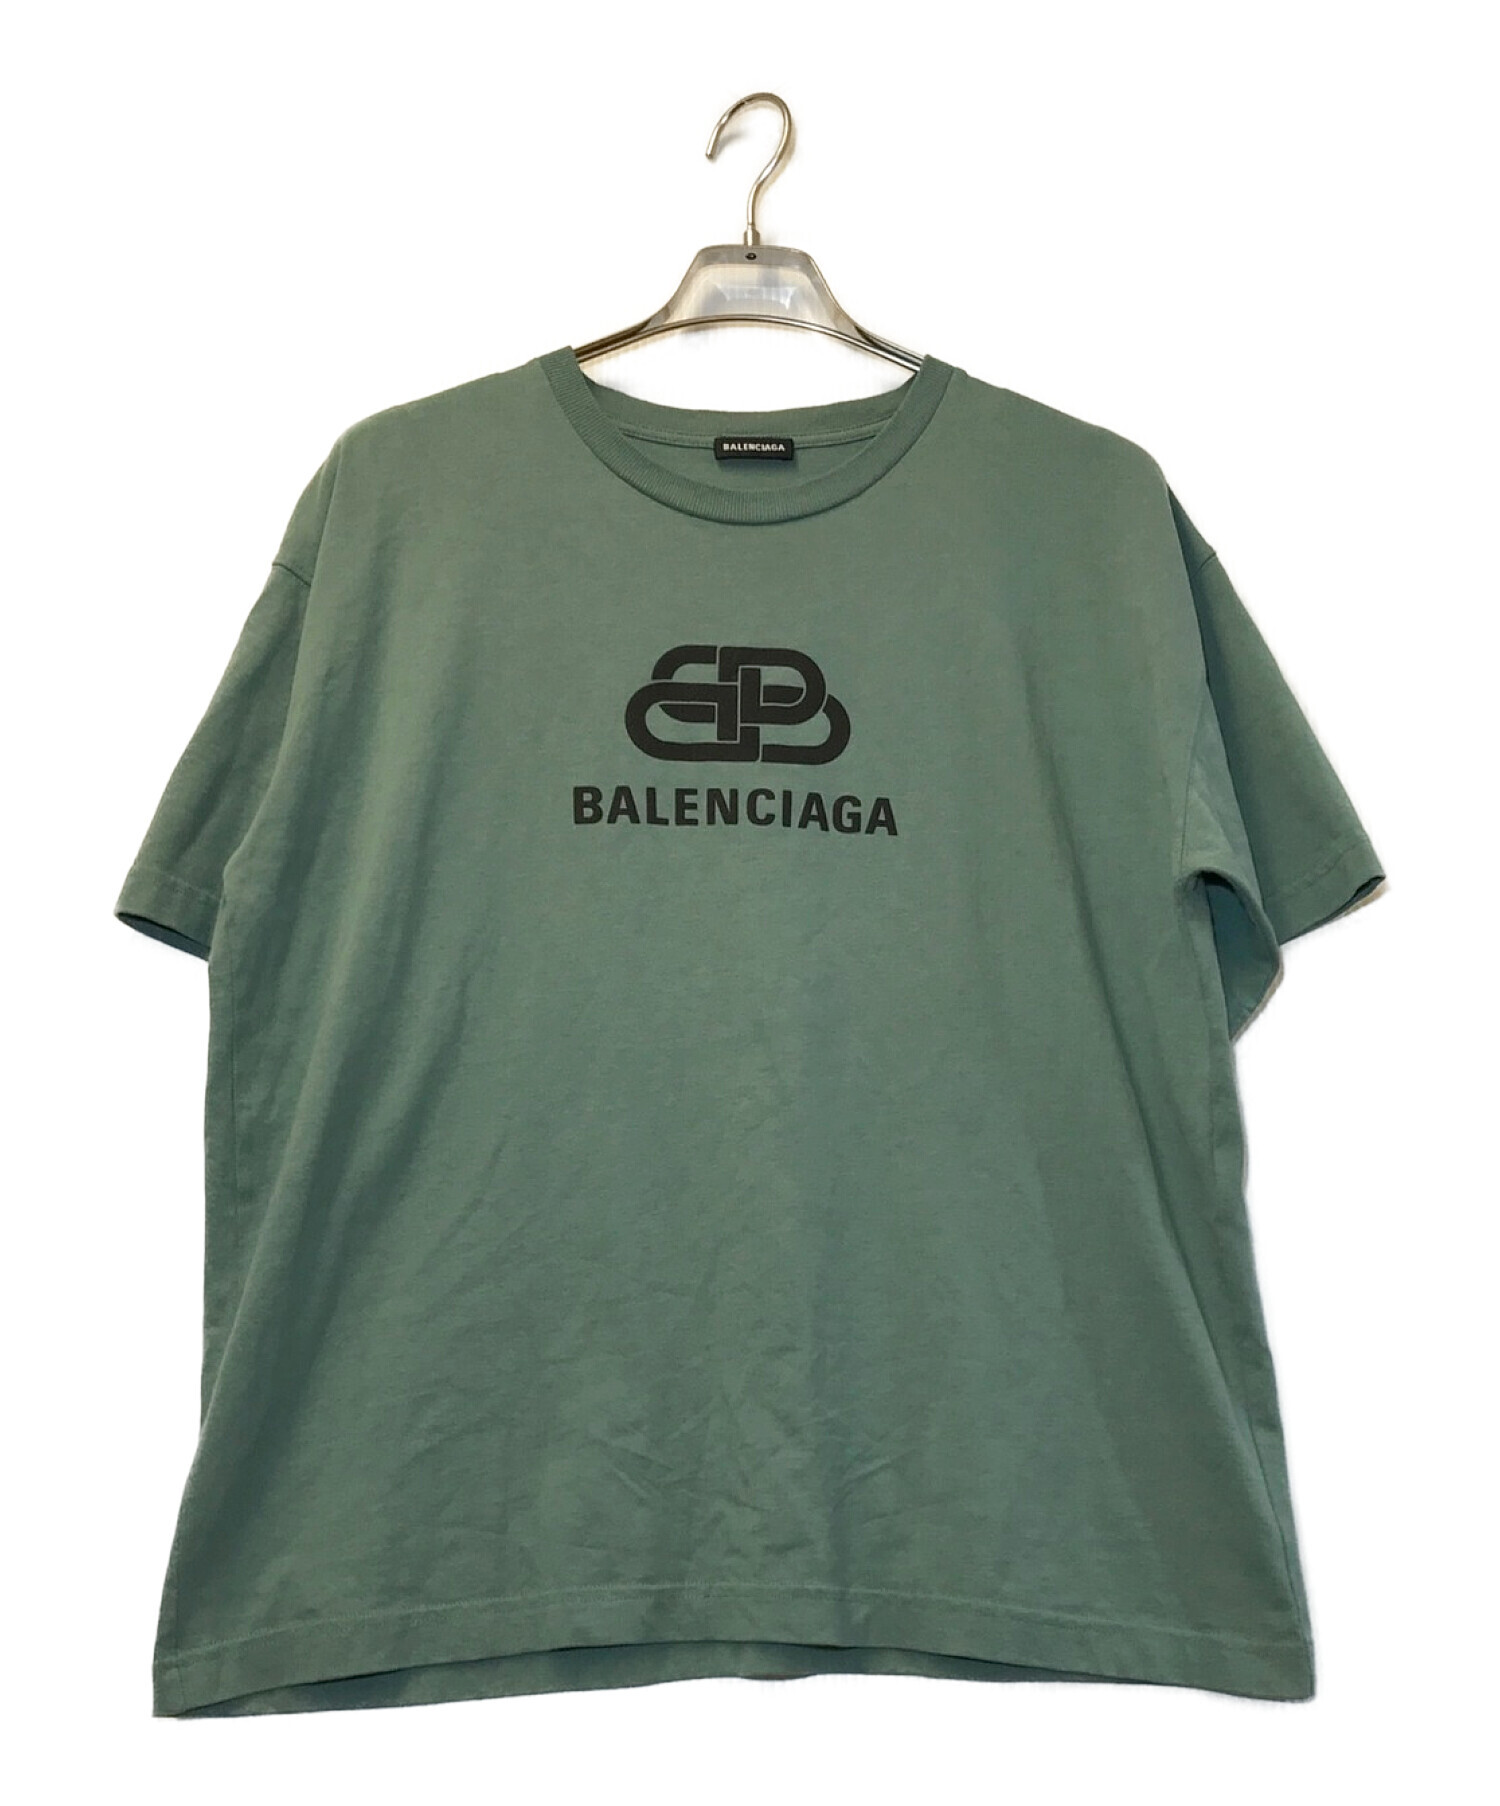 バレンシアガ BBロゴ TシャツMサイズ